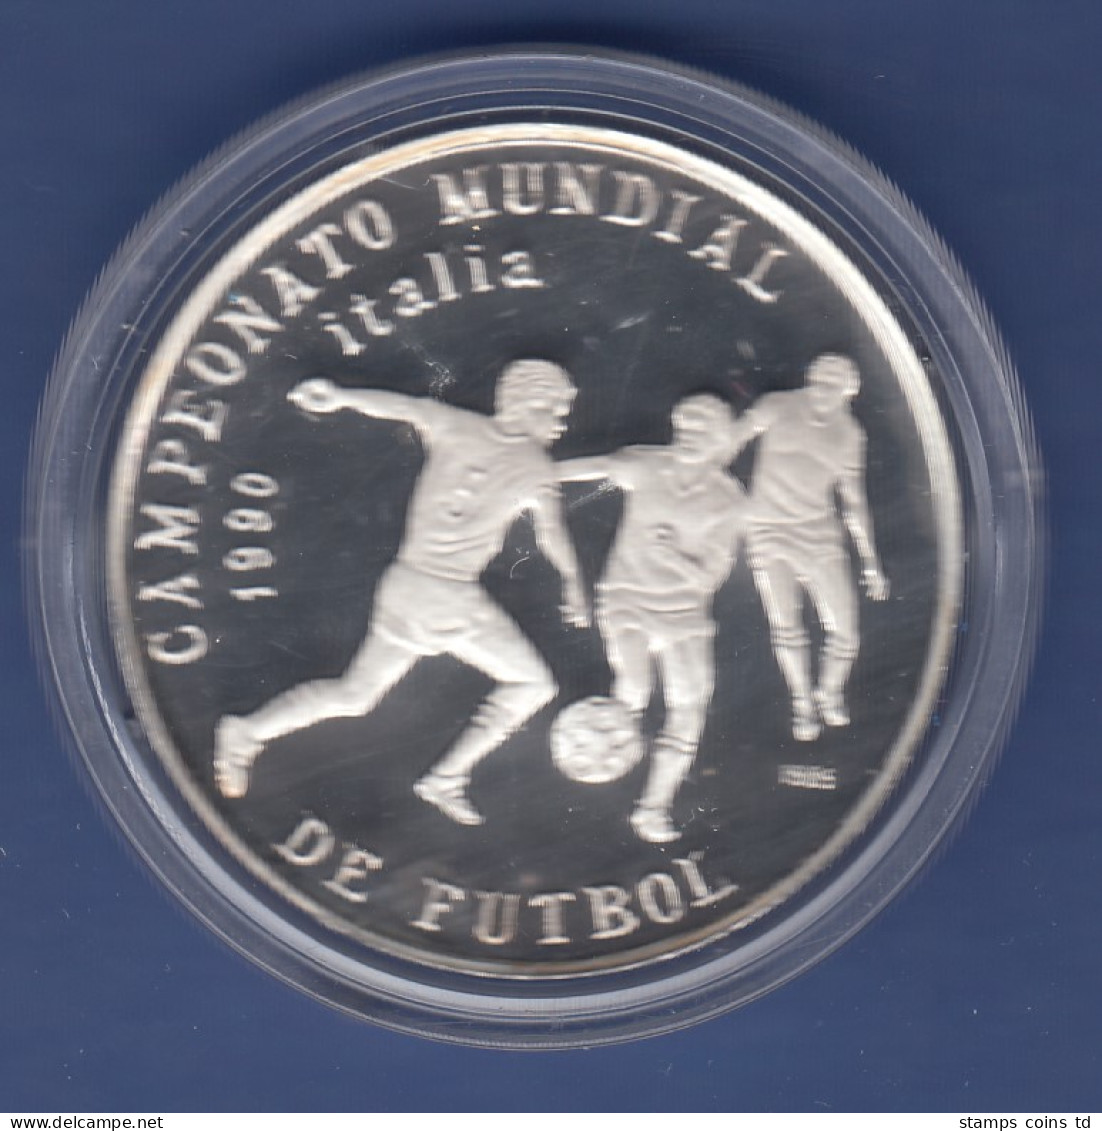 Kuba / Cuba Silbermünze 5 Pesos Fussball WM Italien 1990 3 Spieler Mit Ball - Other - America